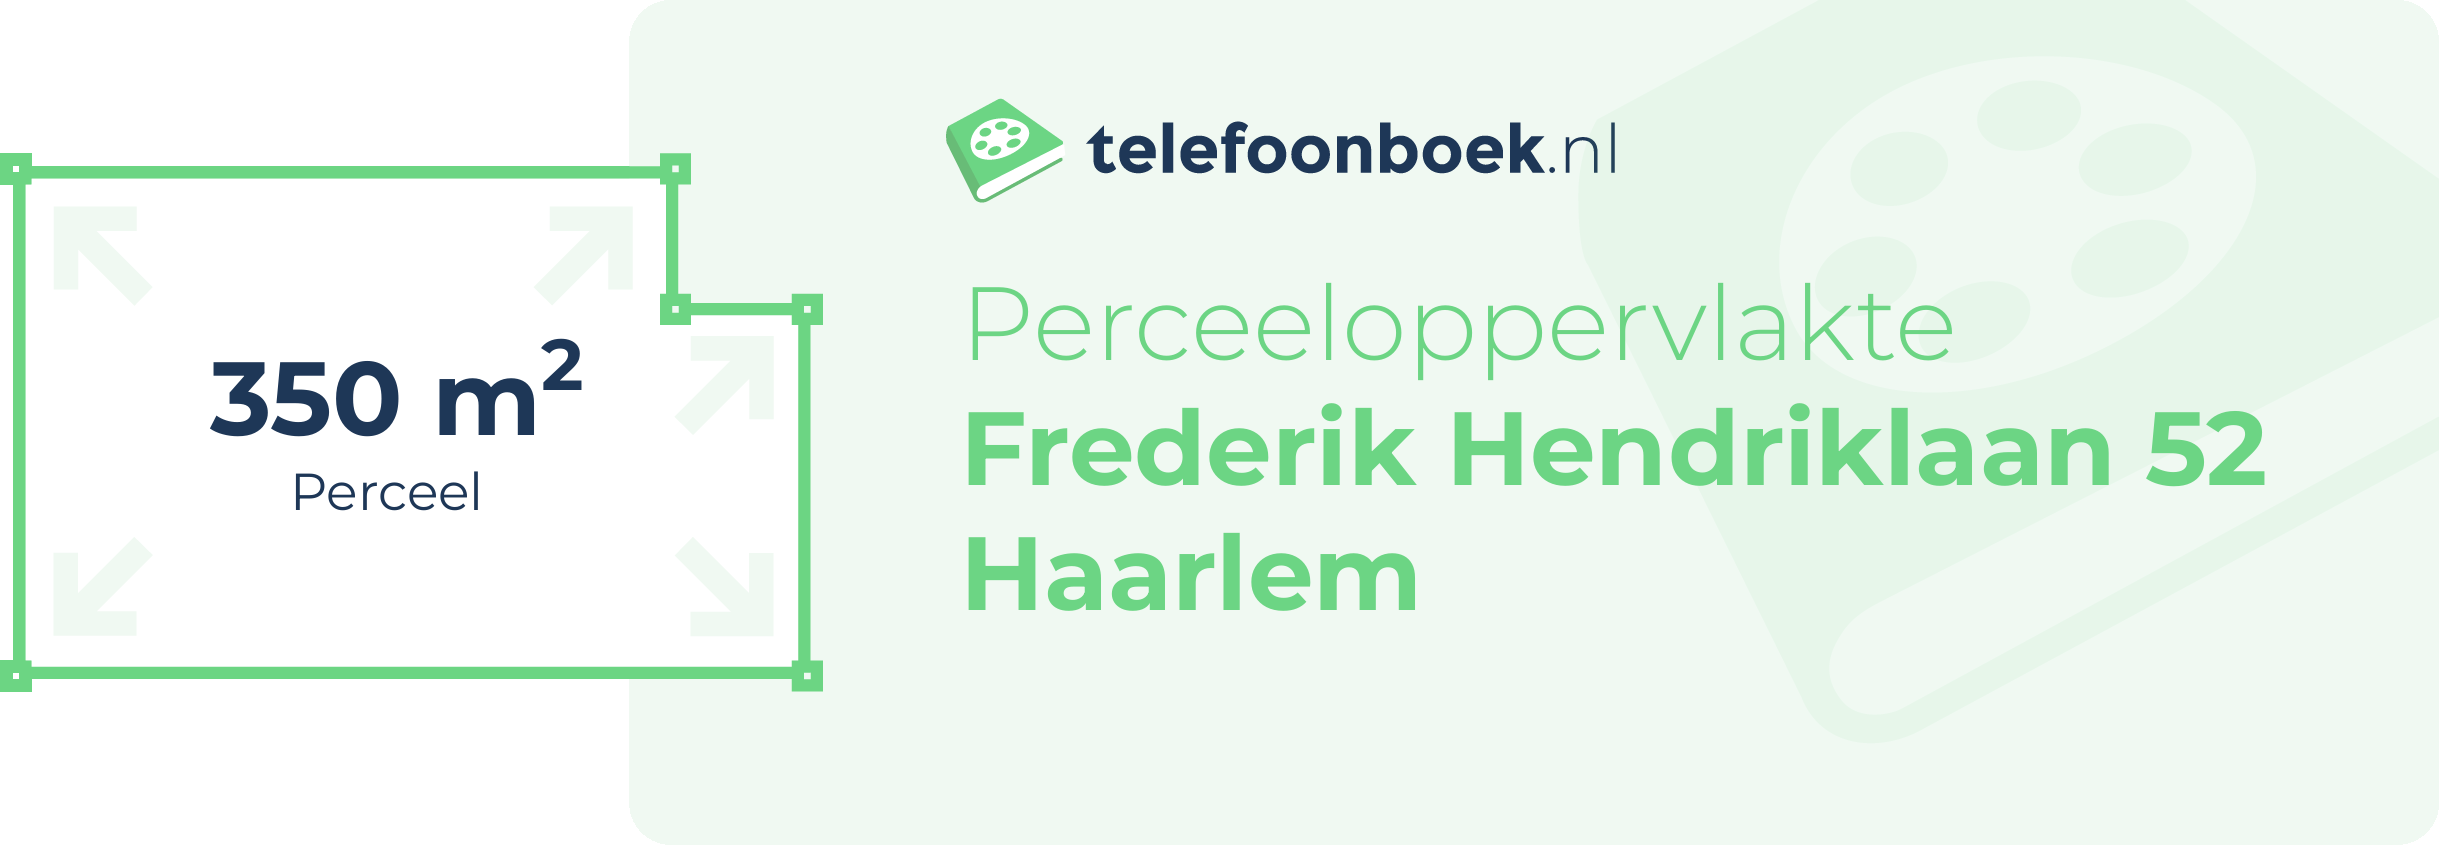 Perceeloppervlakte Frederik Hendriklaan 52 Haarlem